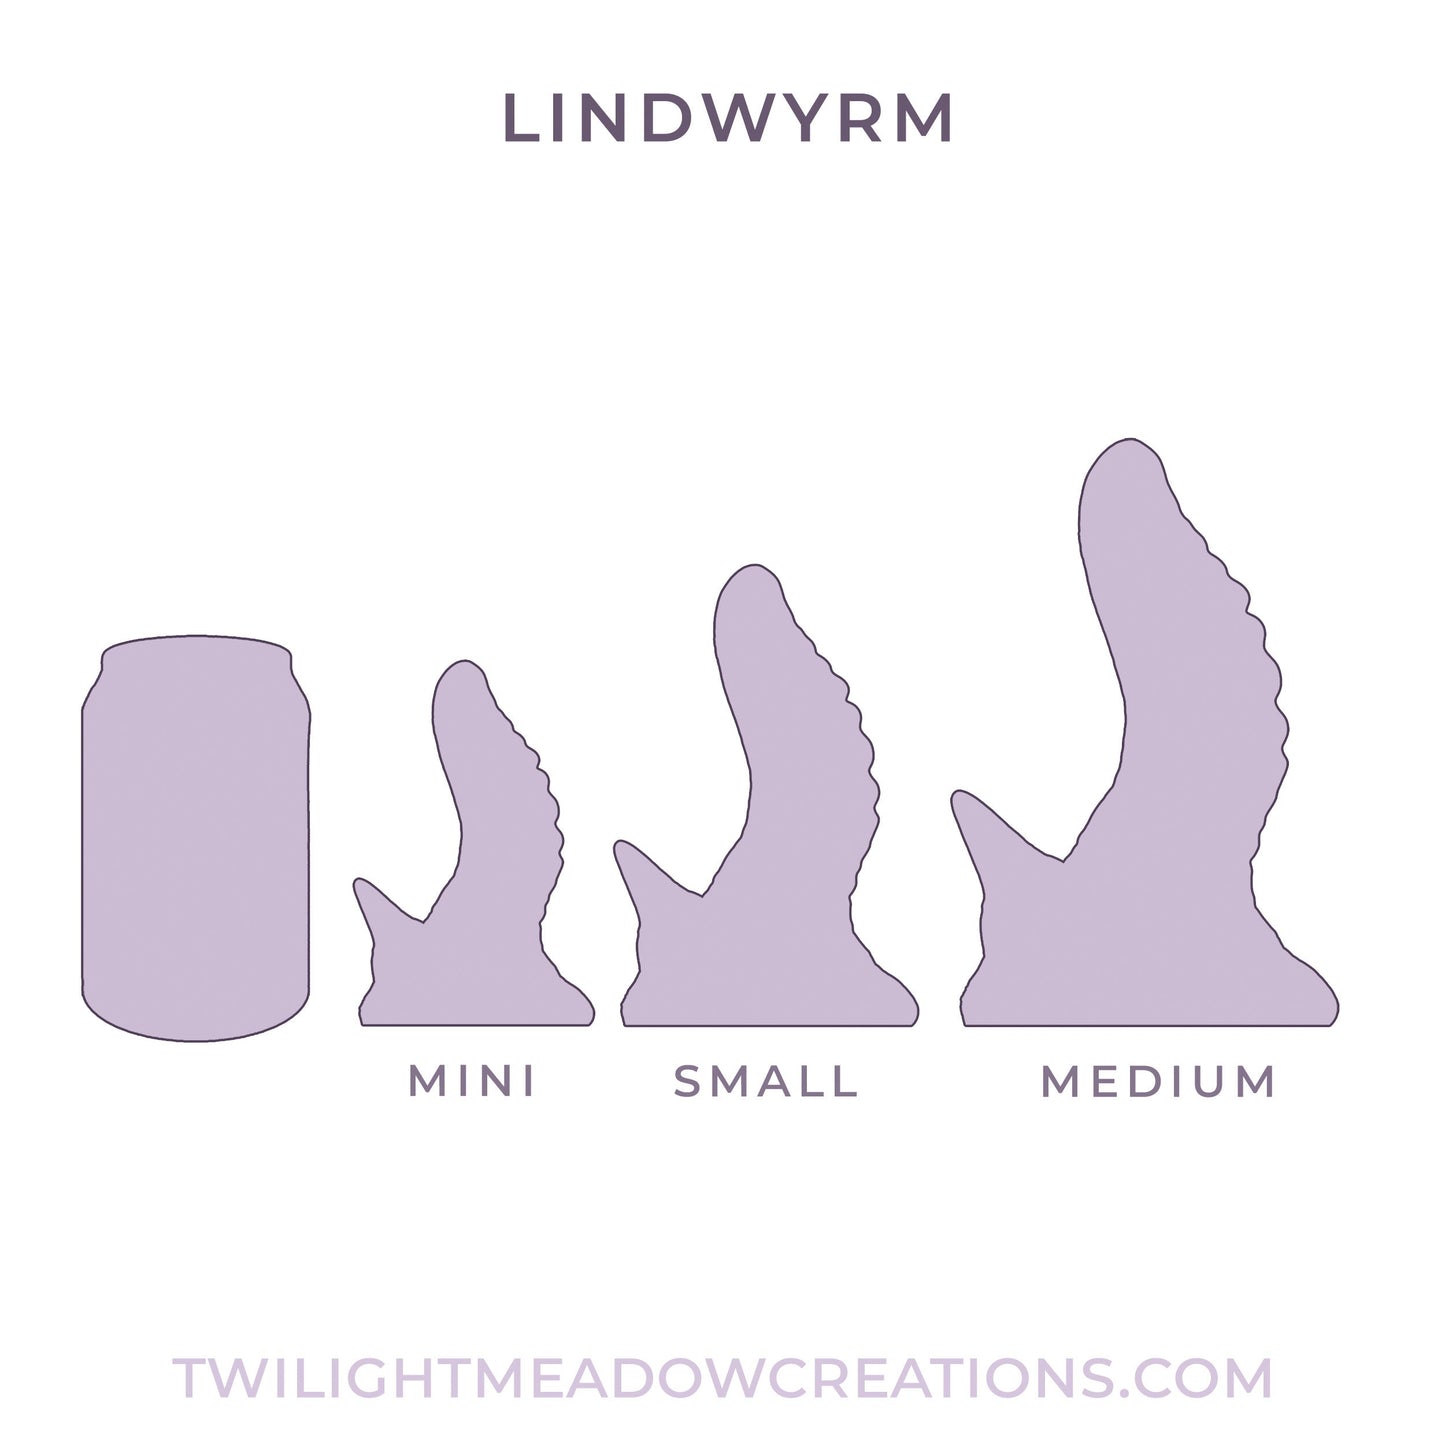 Crystalline Mini Lindwyrm (Firmness: Soft*)